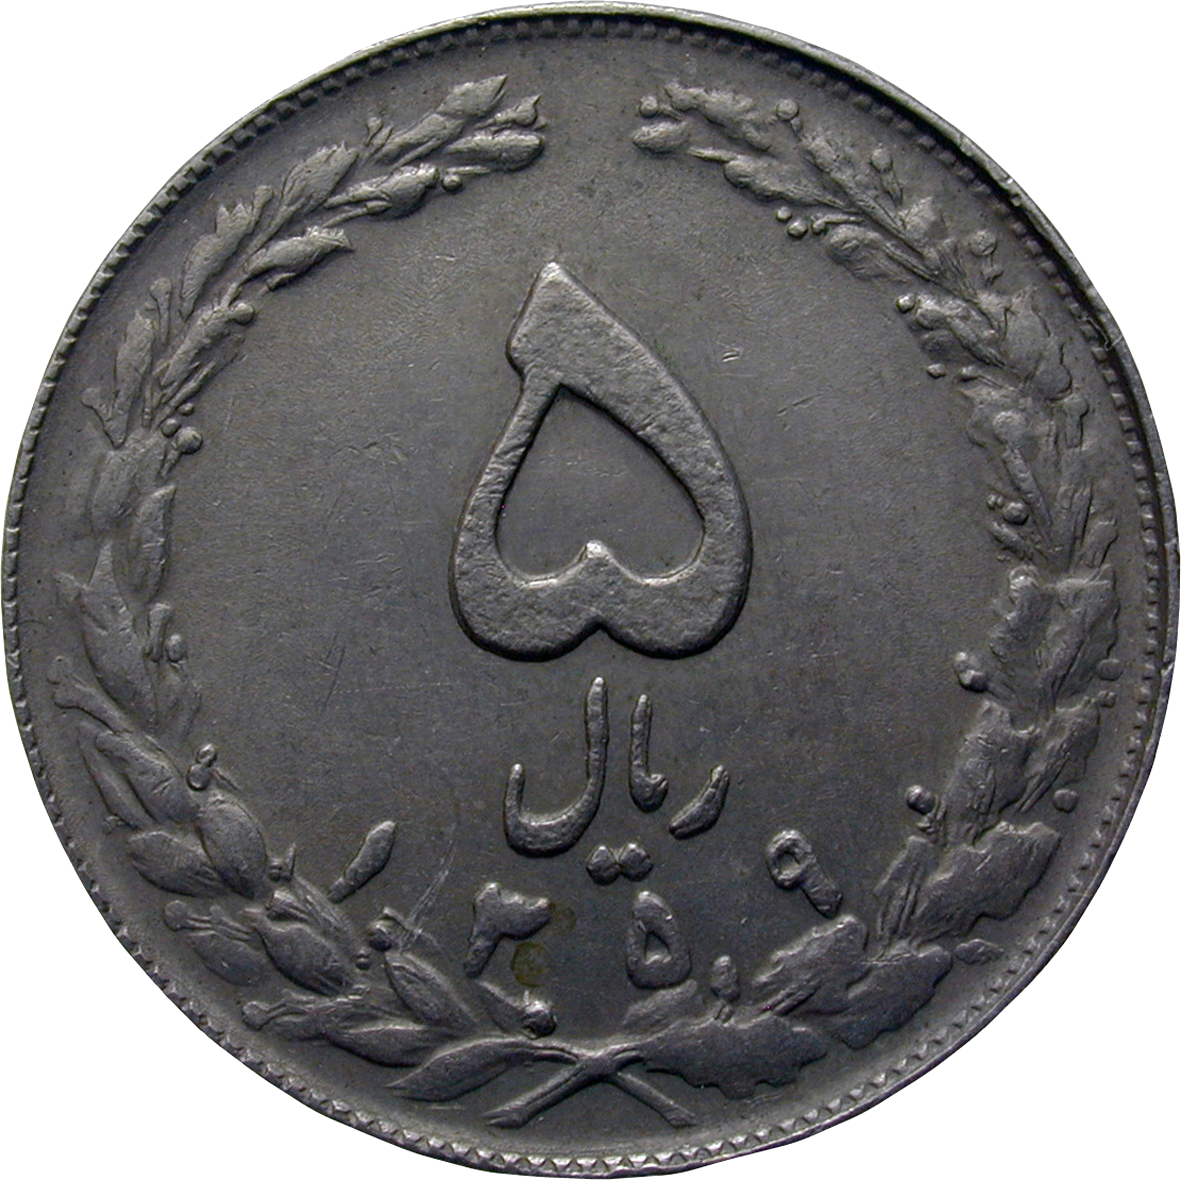 Republic of Iran, 5 Rials 1359 SH (obverse)